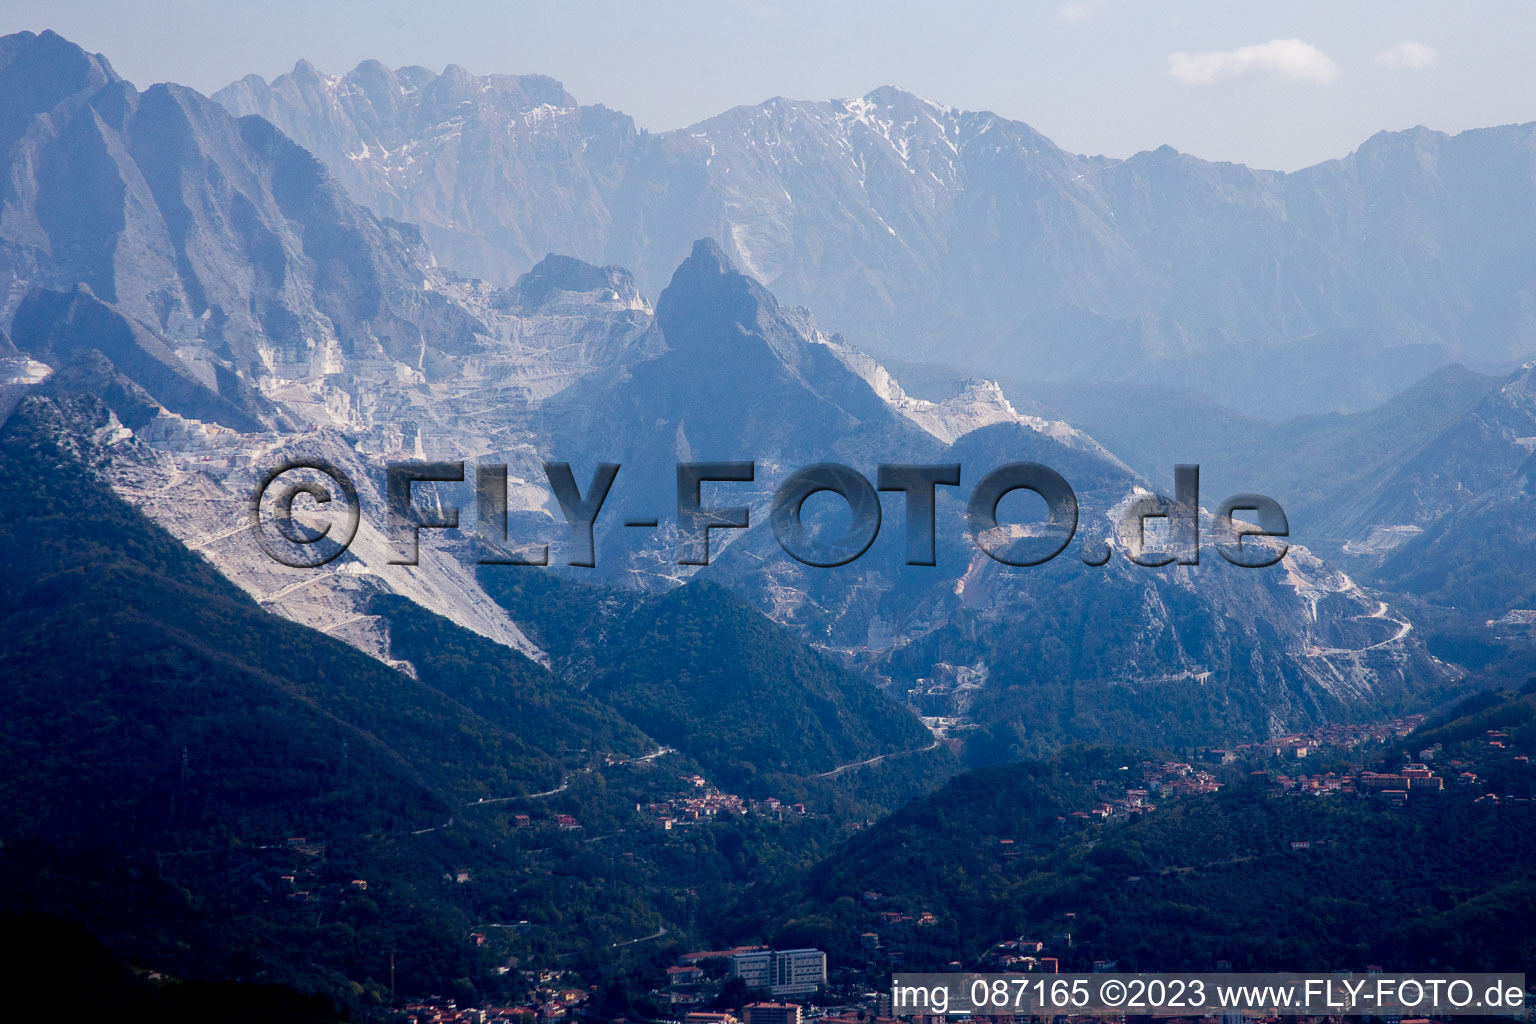 Carrara dans le département Toscane, Italie hors des airs